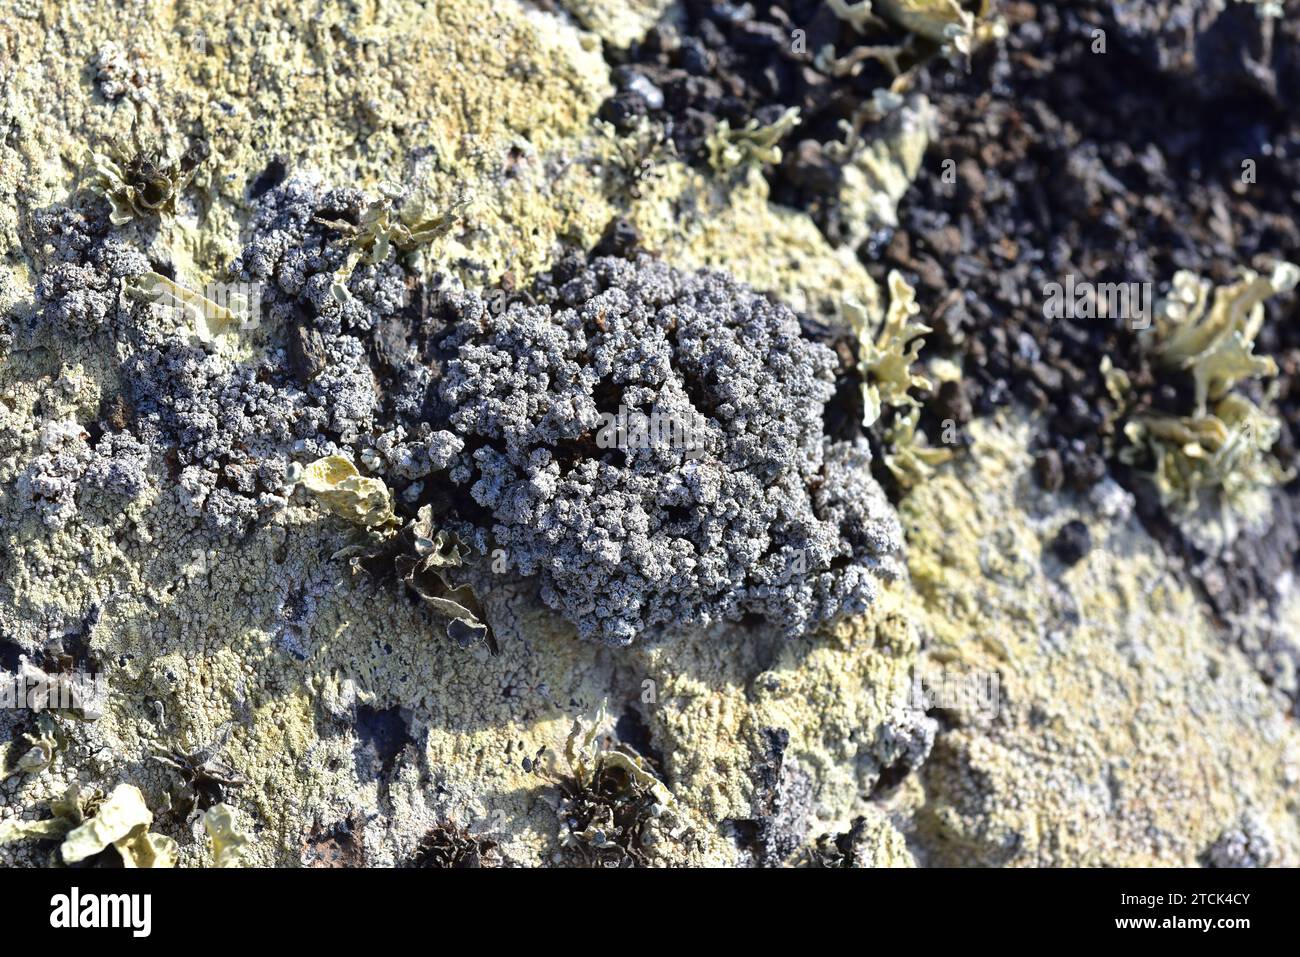 Stereocaulon vesuvianum is a fruticose lichen. This photo was taken in Lanzarote Island, Canary Islands, Spain. Stock Photo